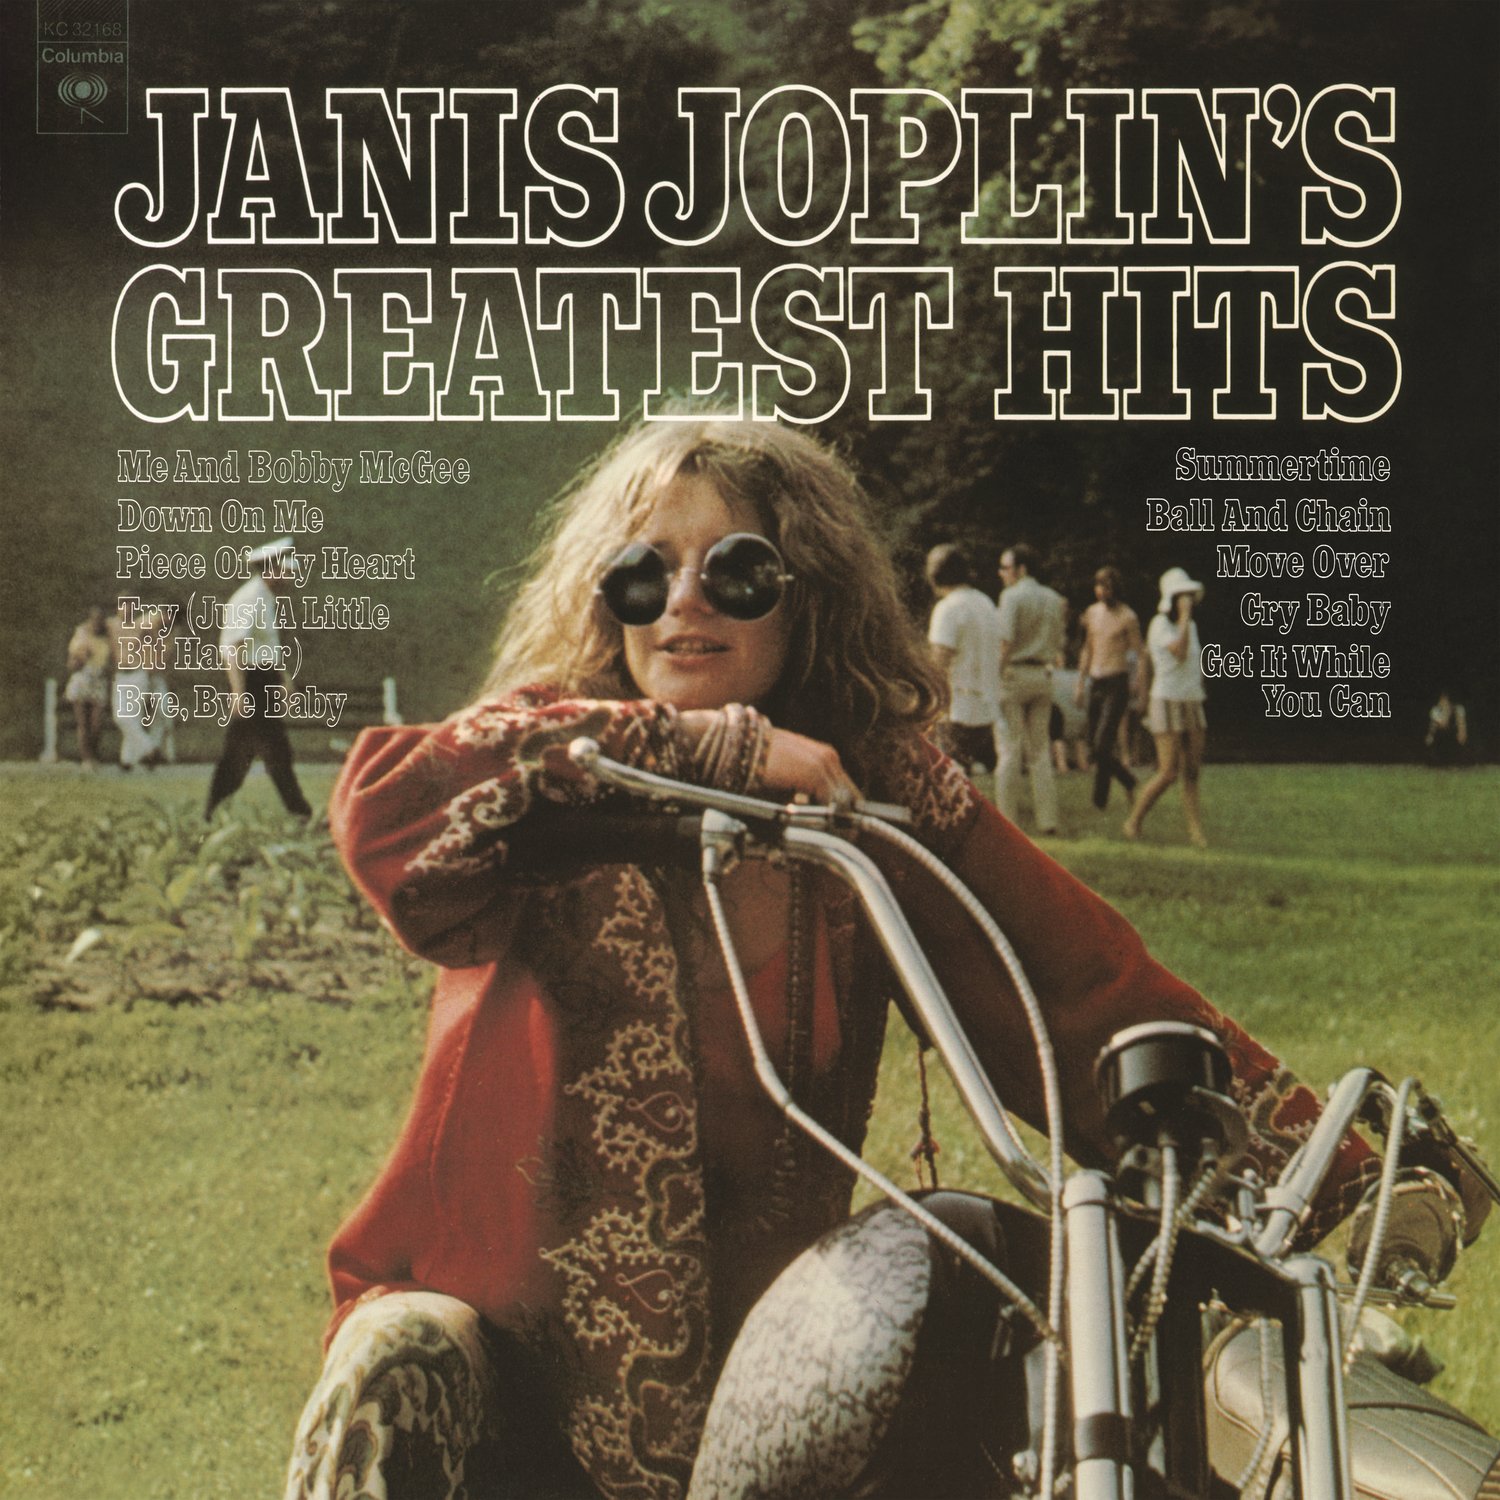 Janis Joplin "Janis Joplin's greatest hits" LP